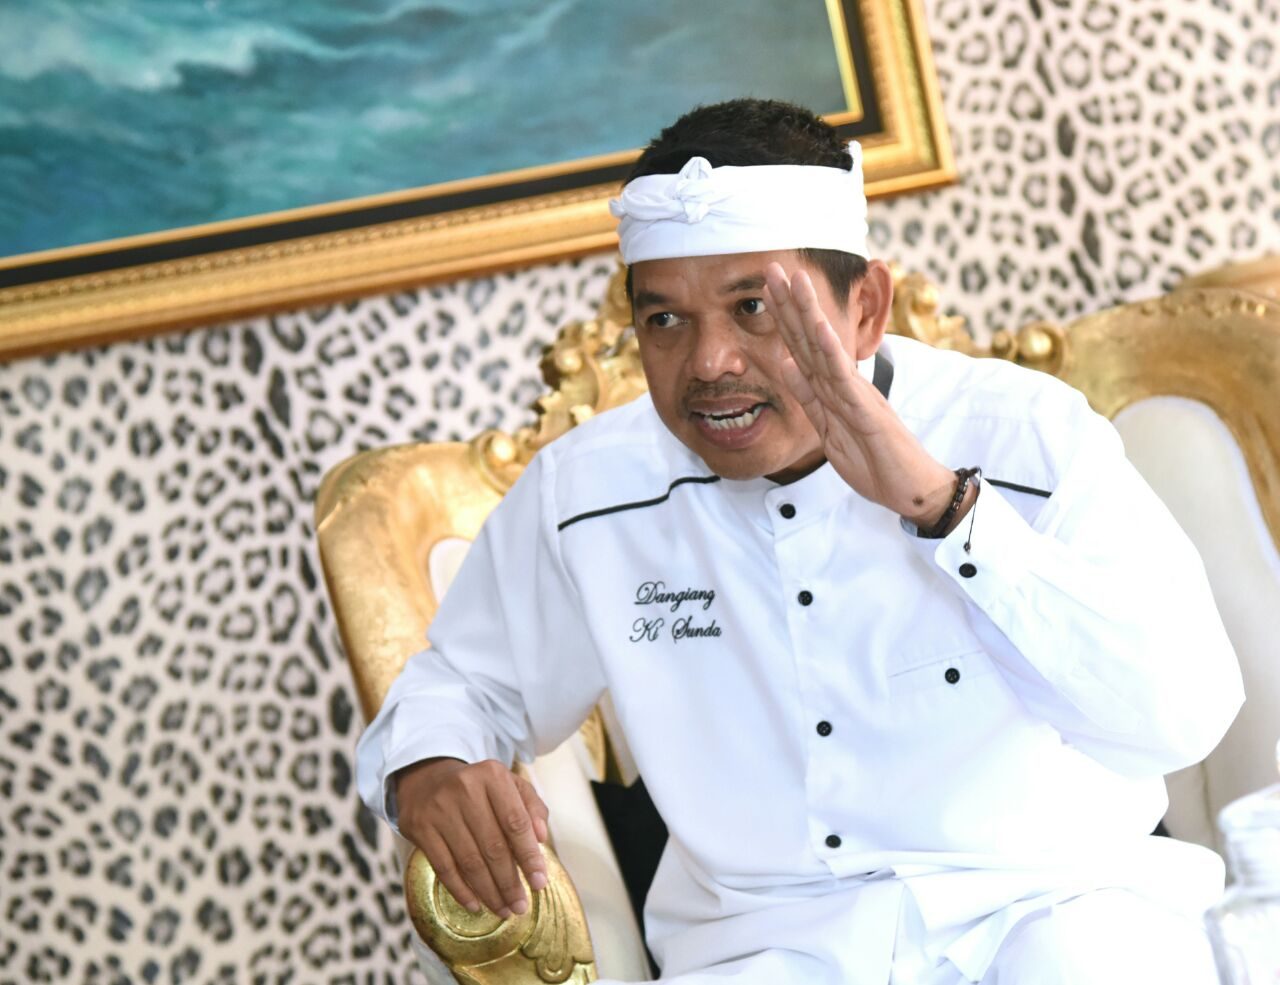 DITEROR. Dedi Mulyadi mengaku diteror oleh seseorang agar menyerahkan mahar Rp 10 miliar jika ingin melaju di Pilkada Jawa Barat 2018. Foto oleh Agung Fatma Putra. 